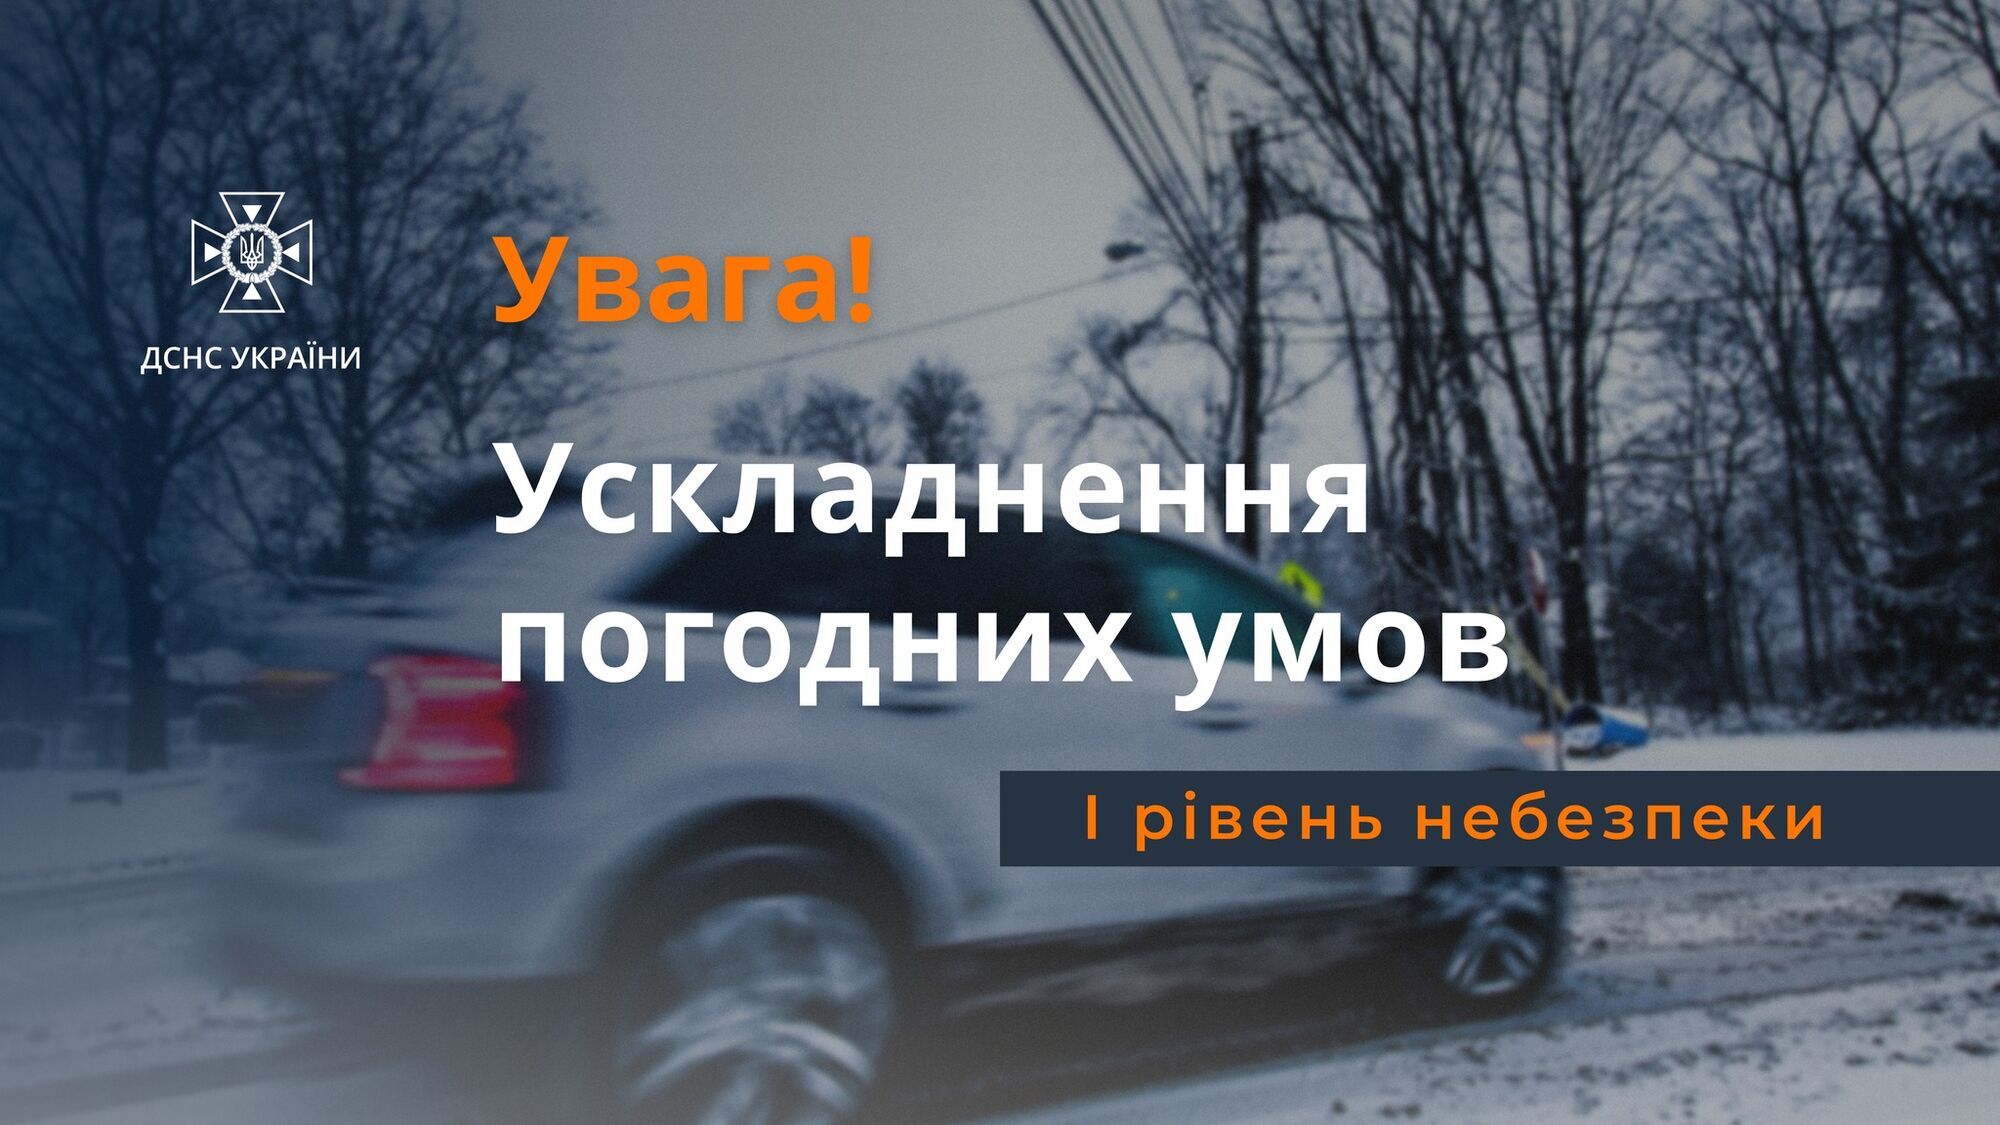 Синоптики попередили про складні погодні умови в Києві та області 22 листопада